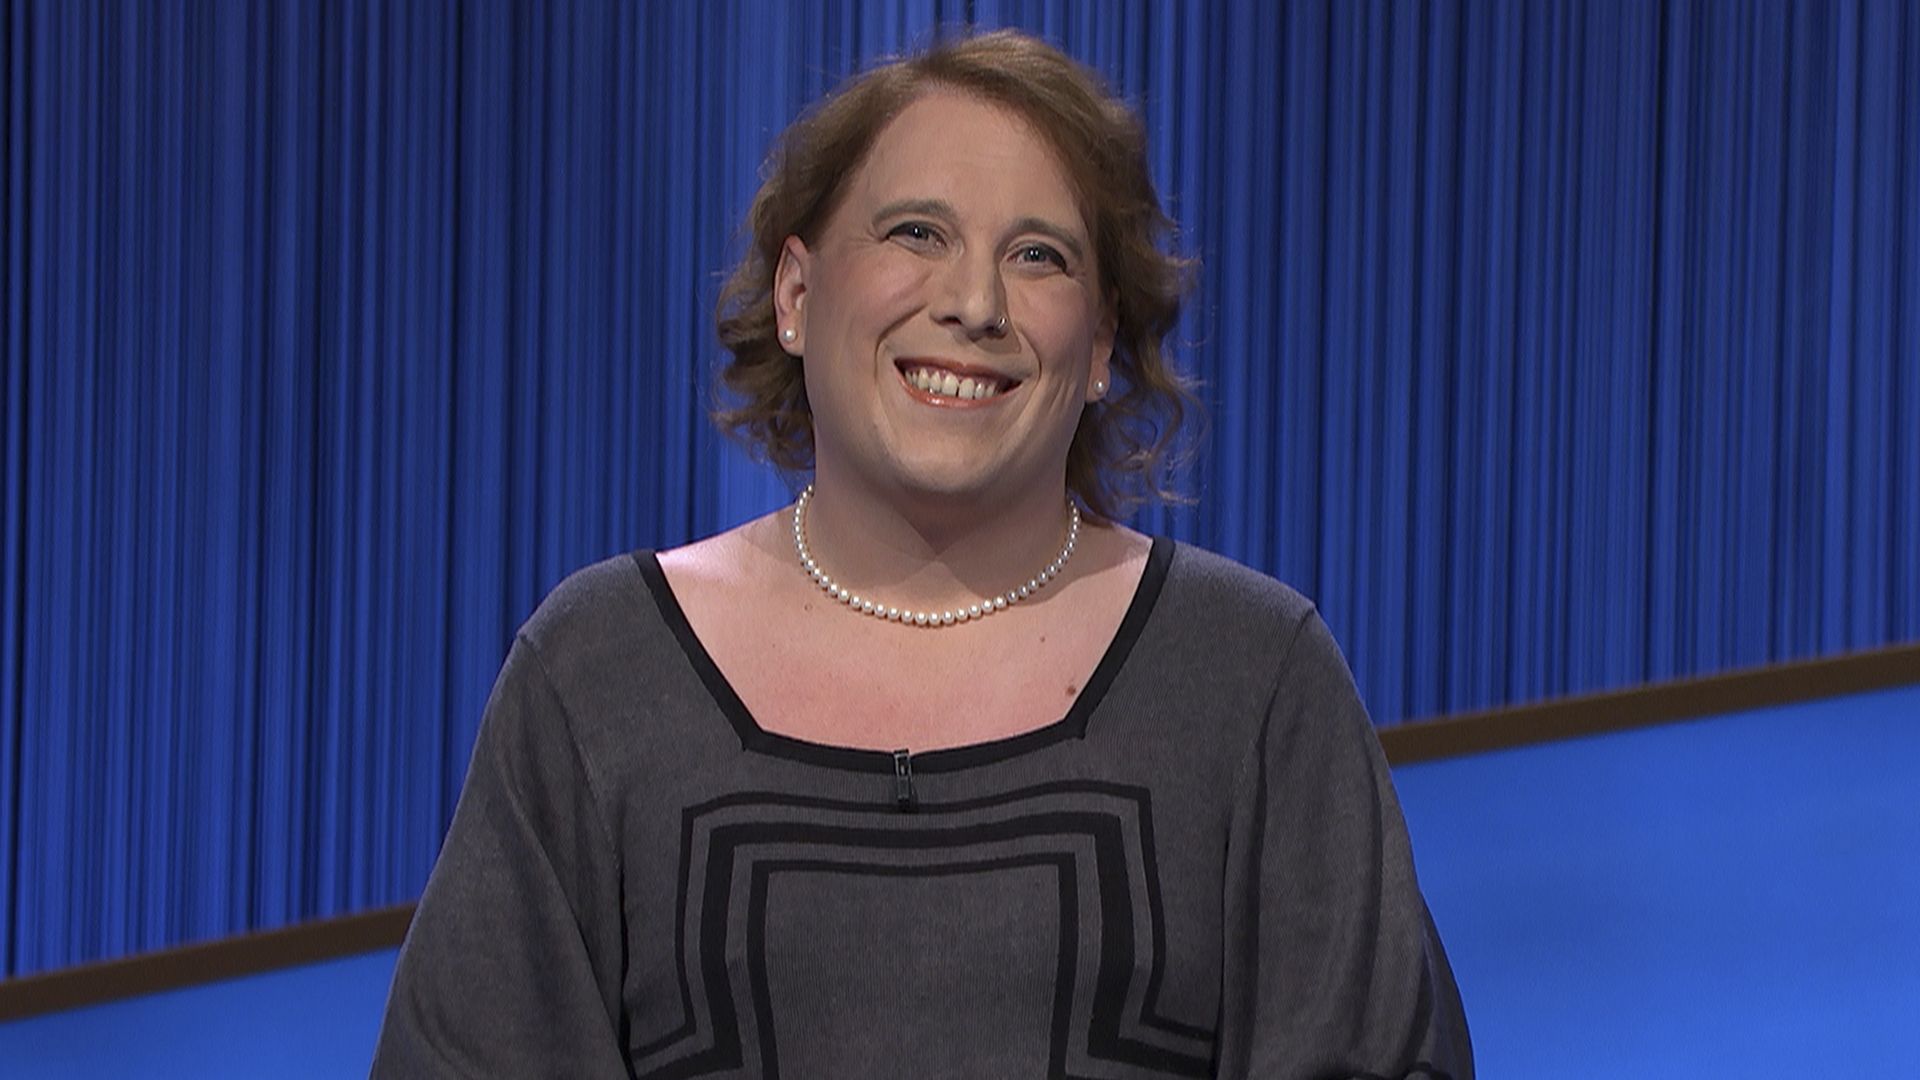 Amy Schneider on the "Jeopardy!" set